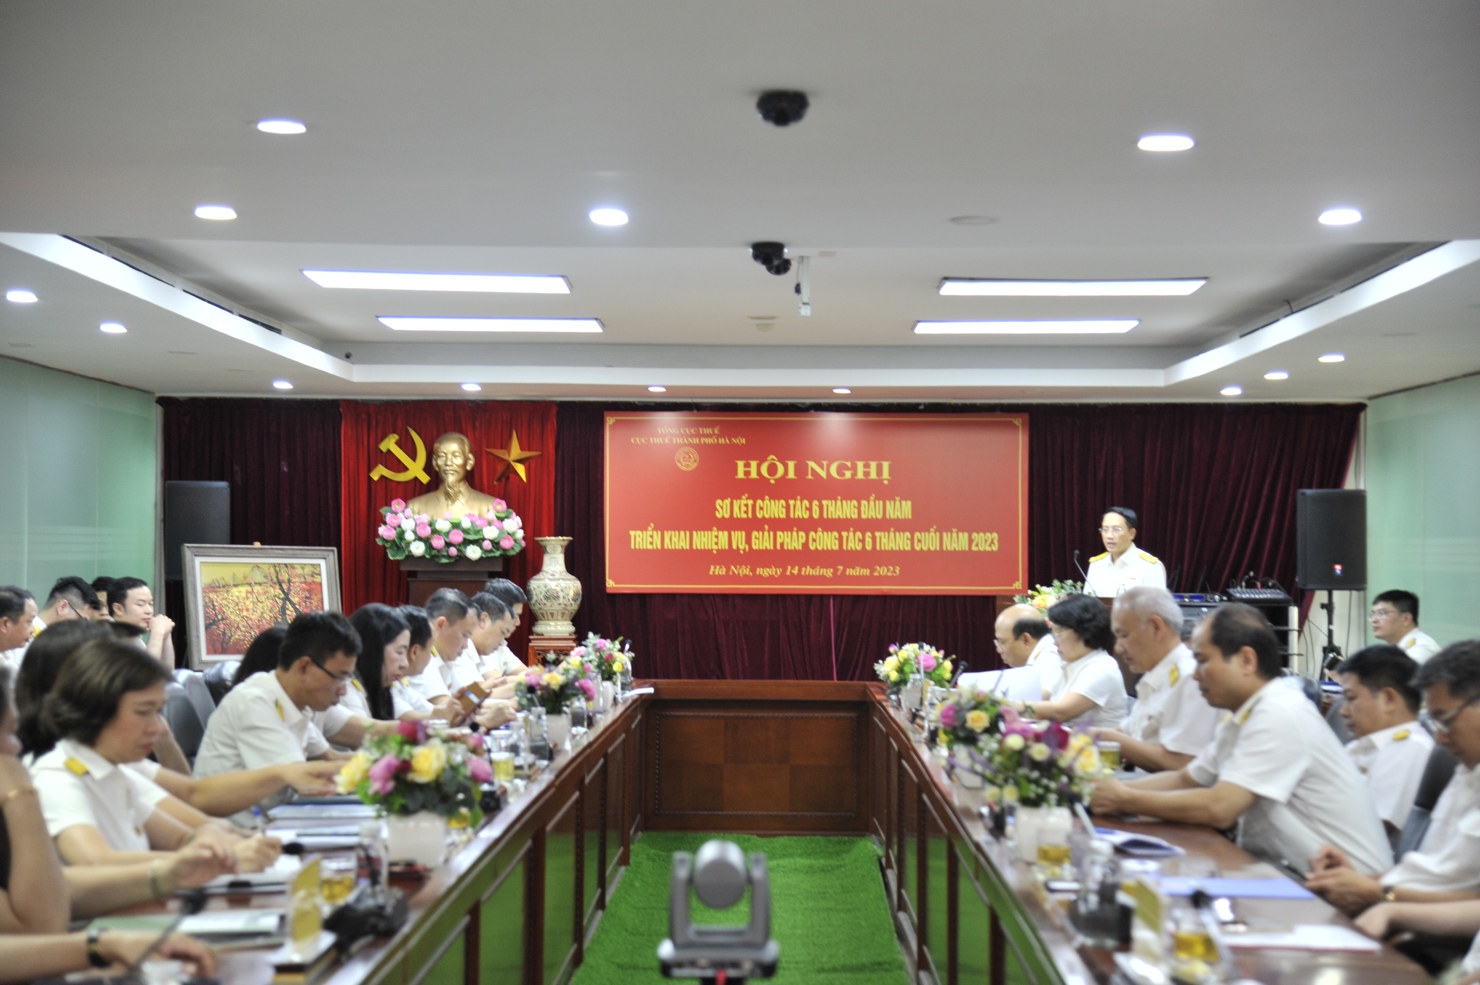 Cục Thuế Hà Nội tổ chức sơ kết công tác 6 tháng đầu năm vào chiều ngày 14/7.